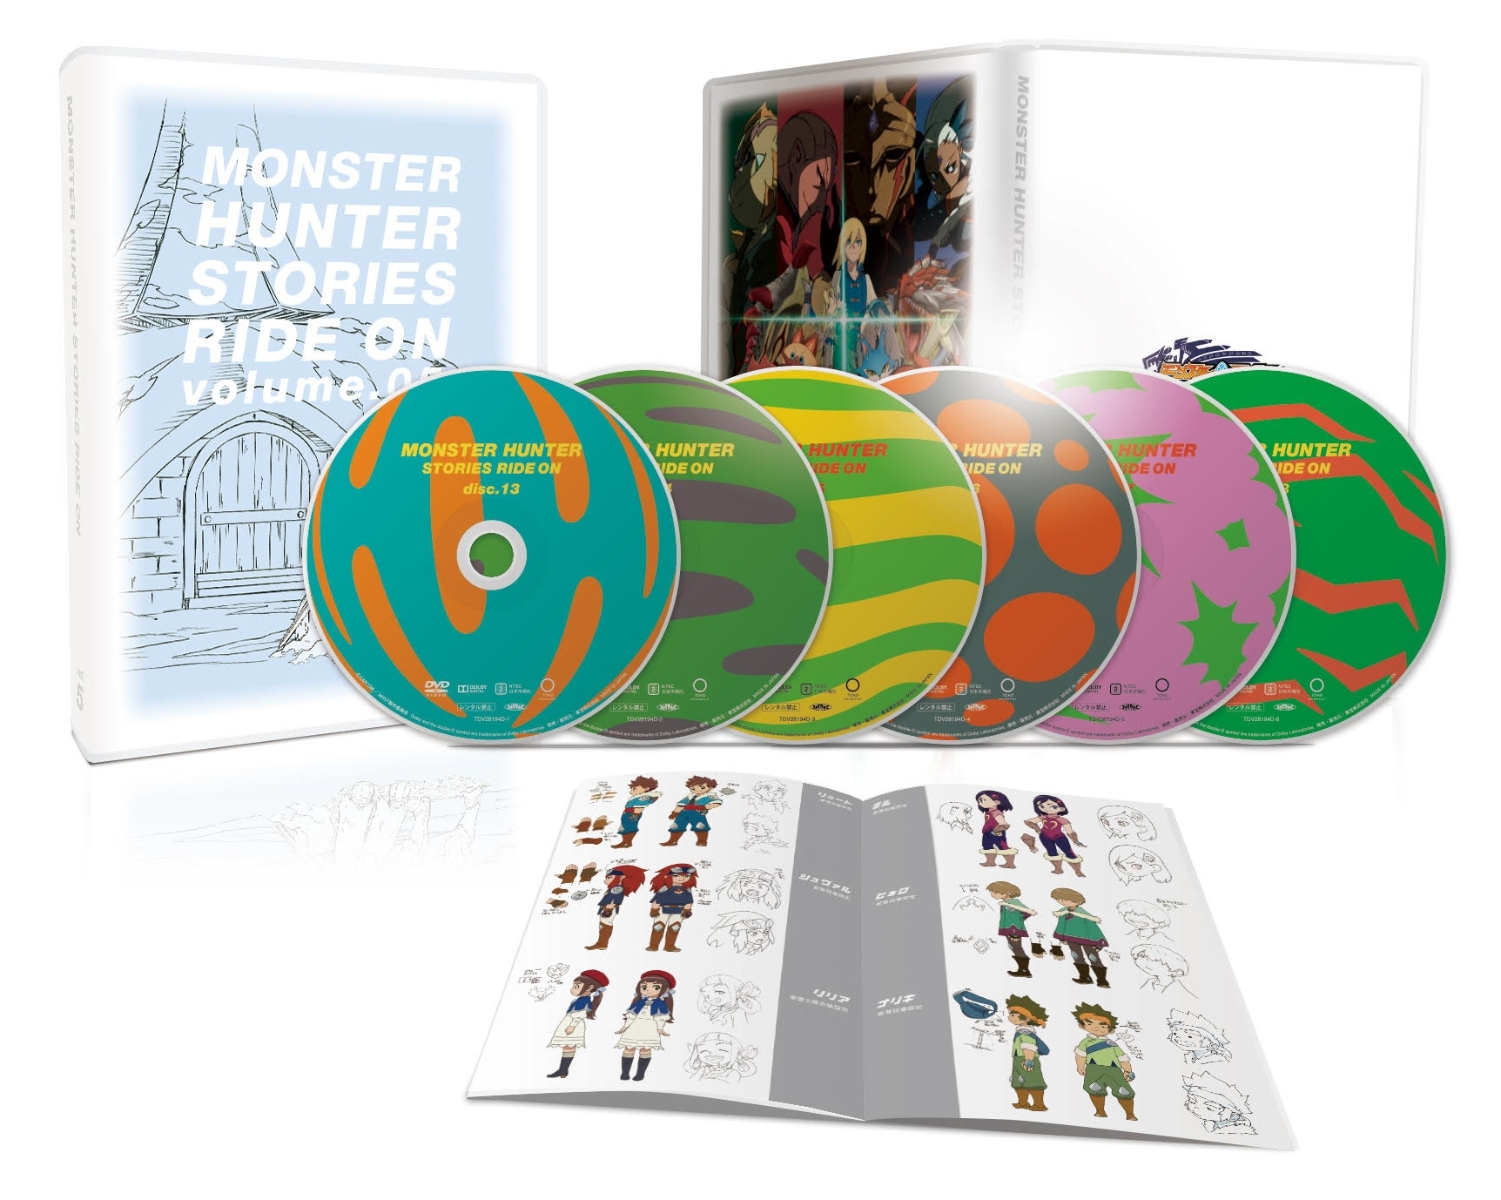 モンスターハンター ストーリーズ RIDE ON DVD BOX Vol.5画像